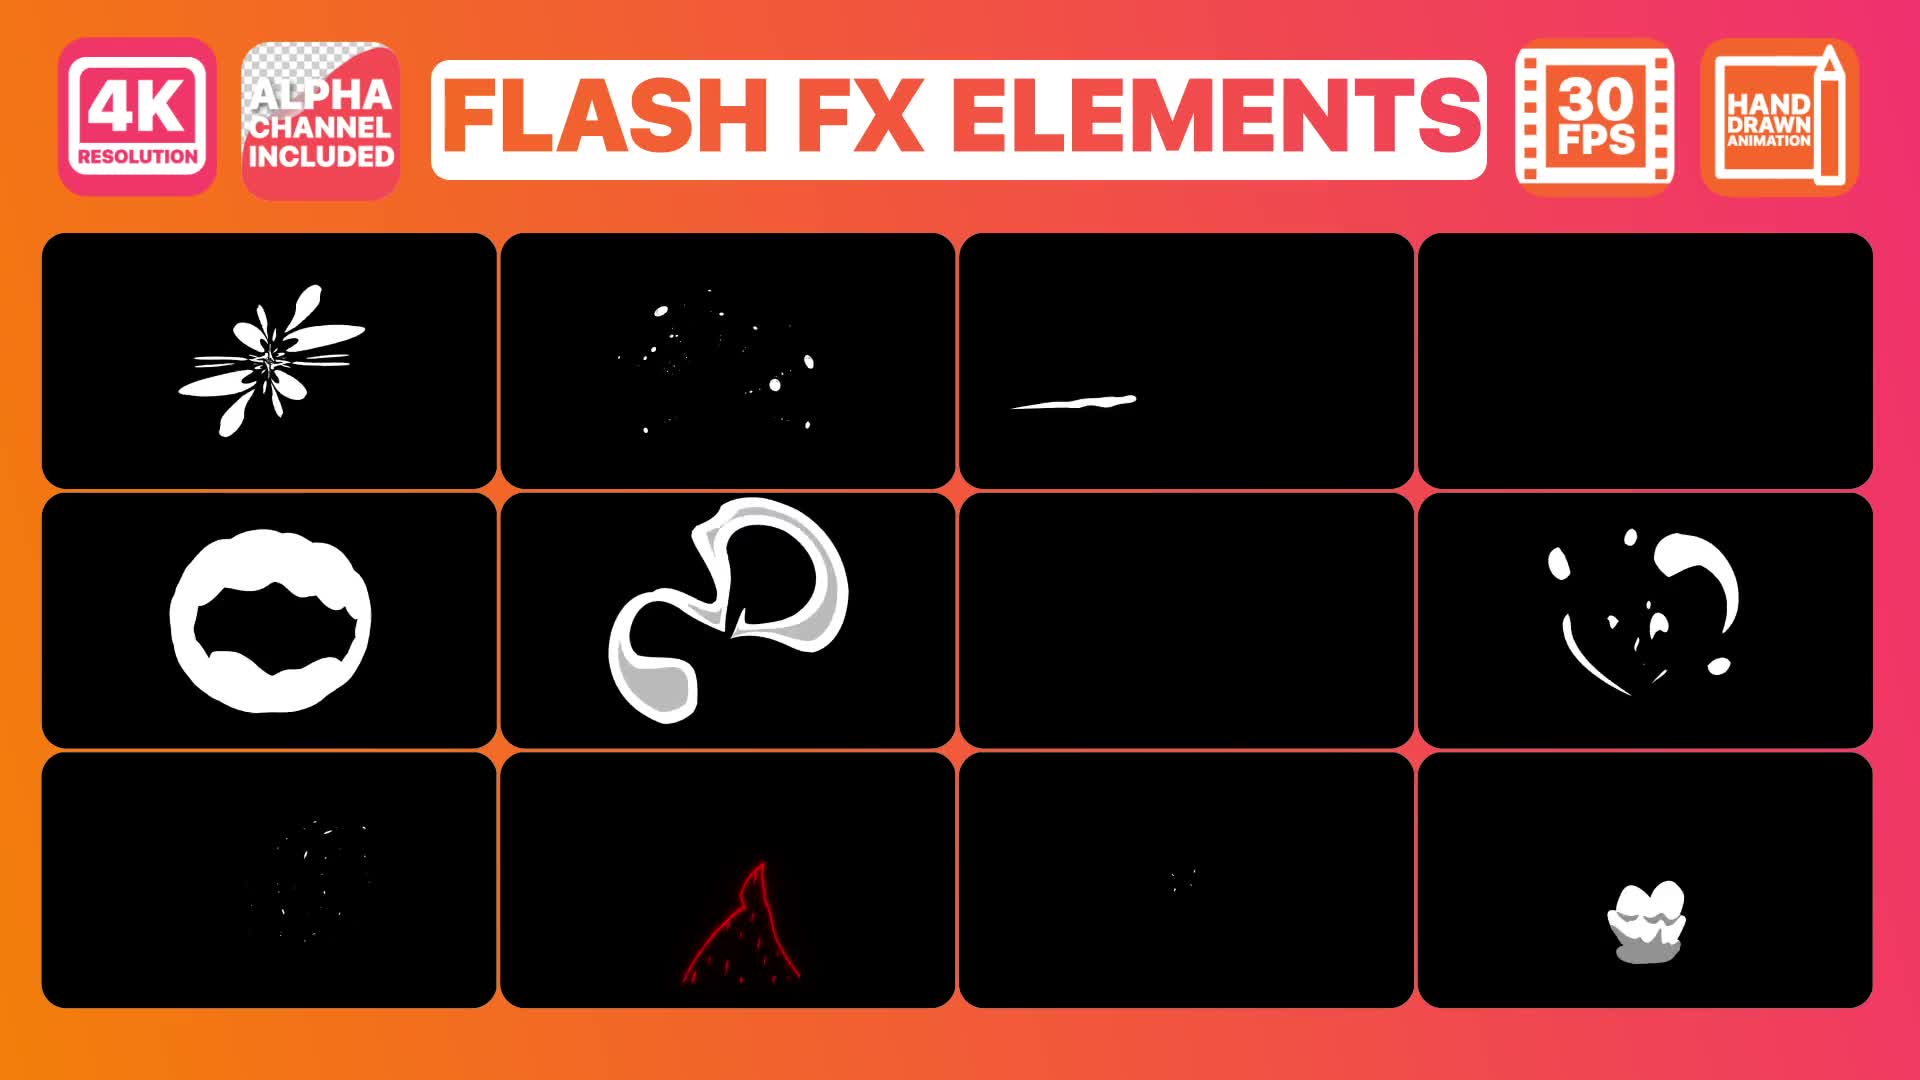 Flash FX Pack | Premiere Pro MOGRT Videohive 31518614 Premiere Pro Image 2